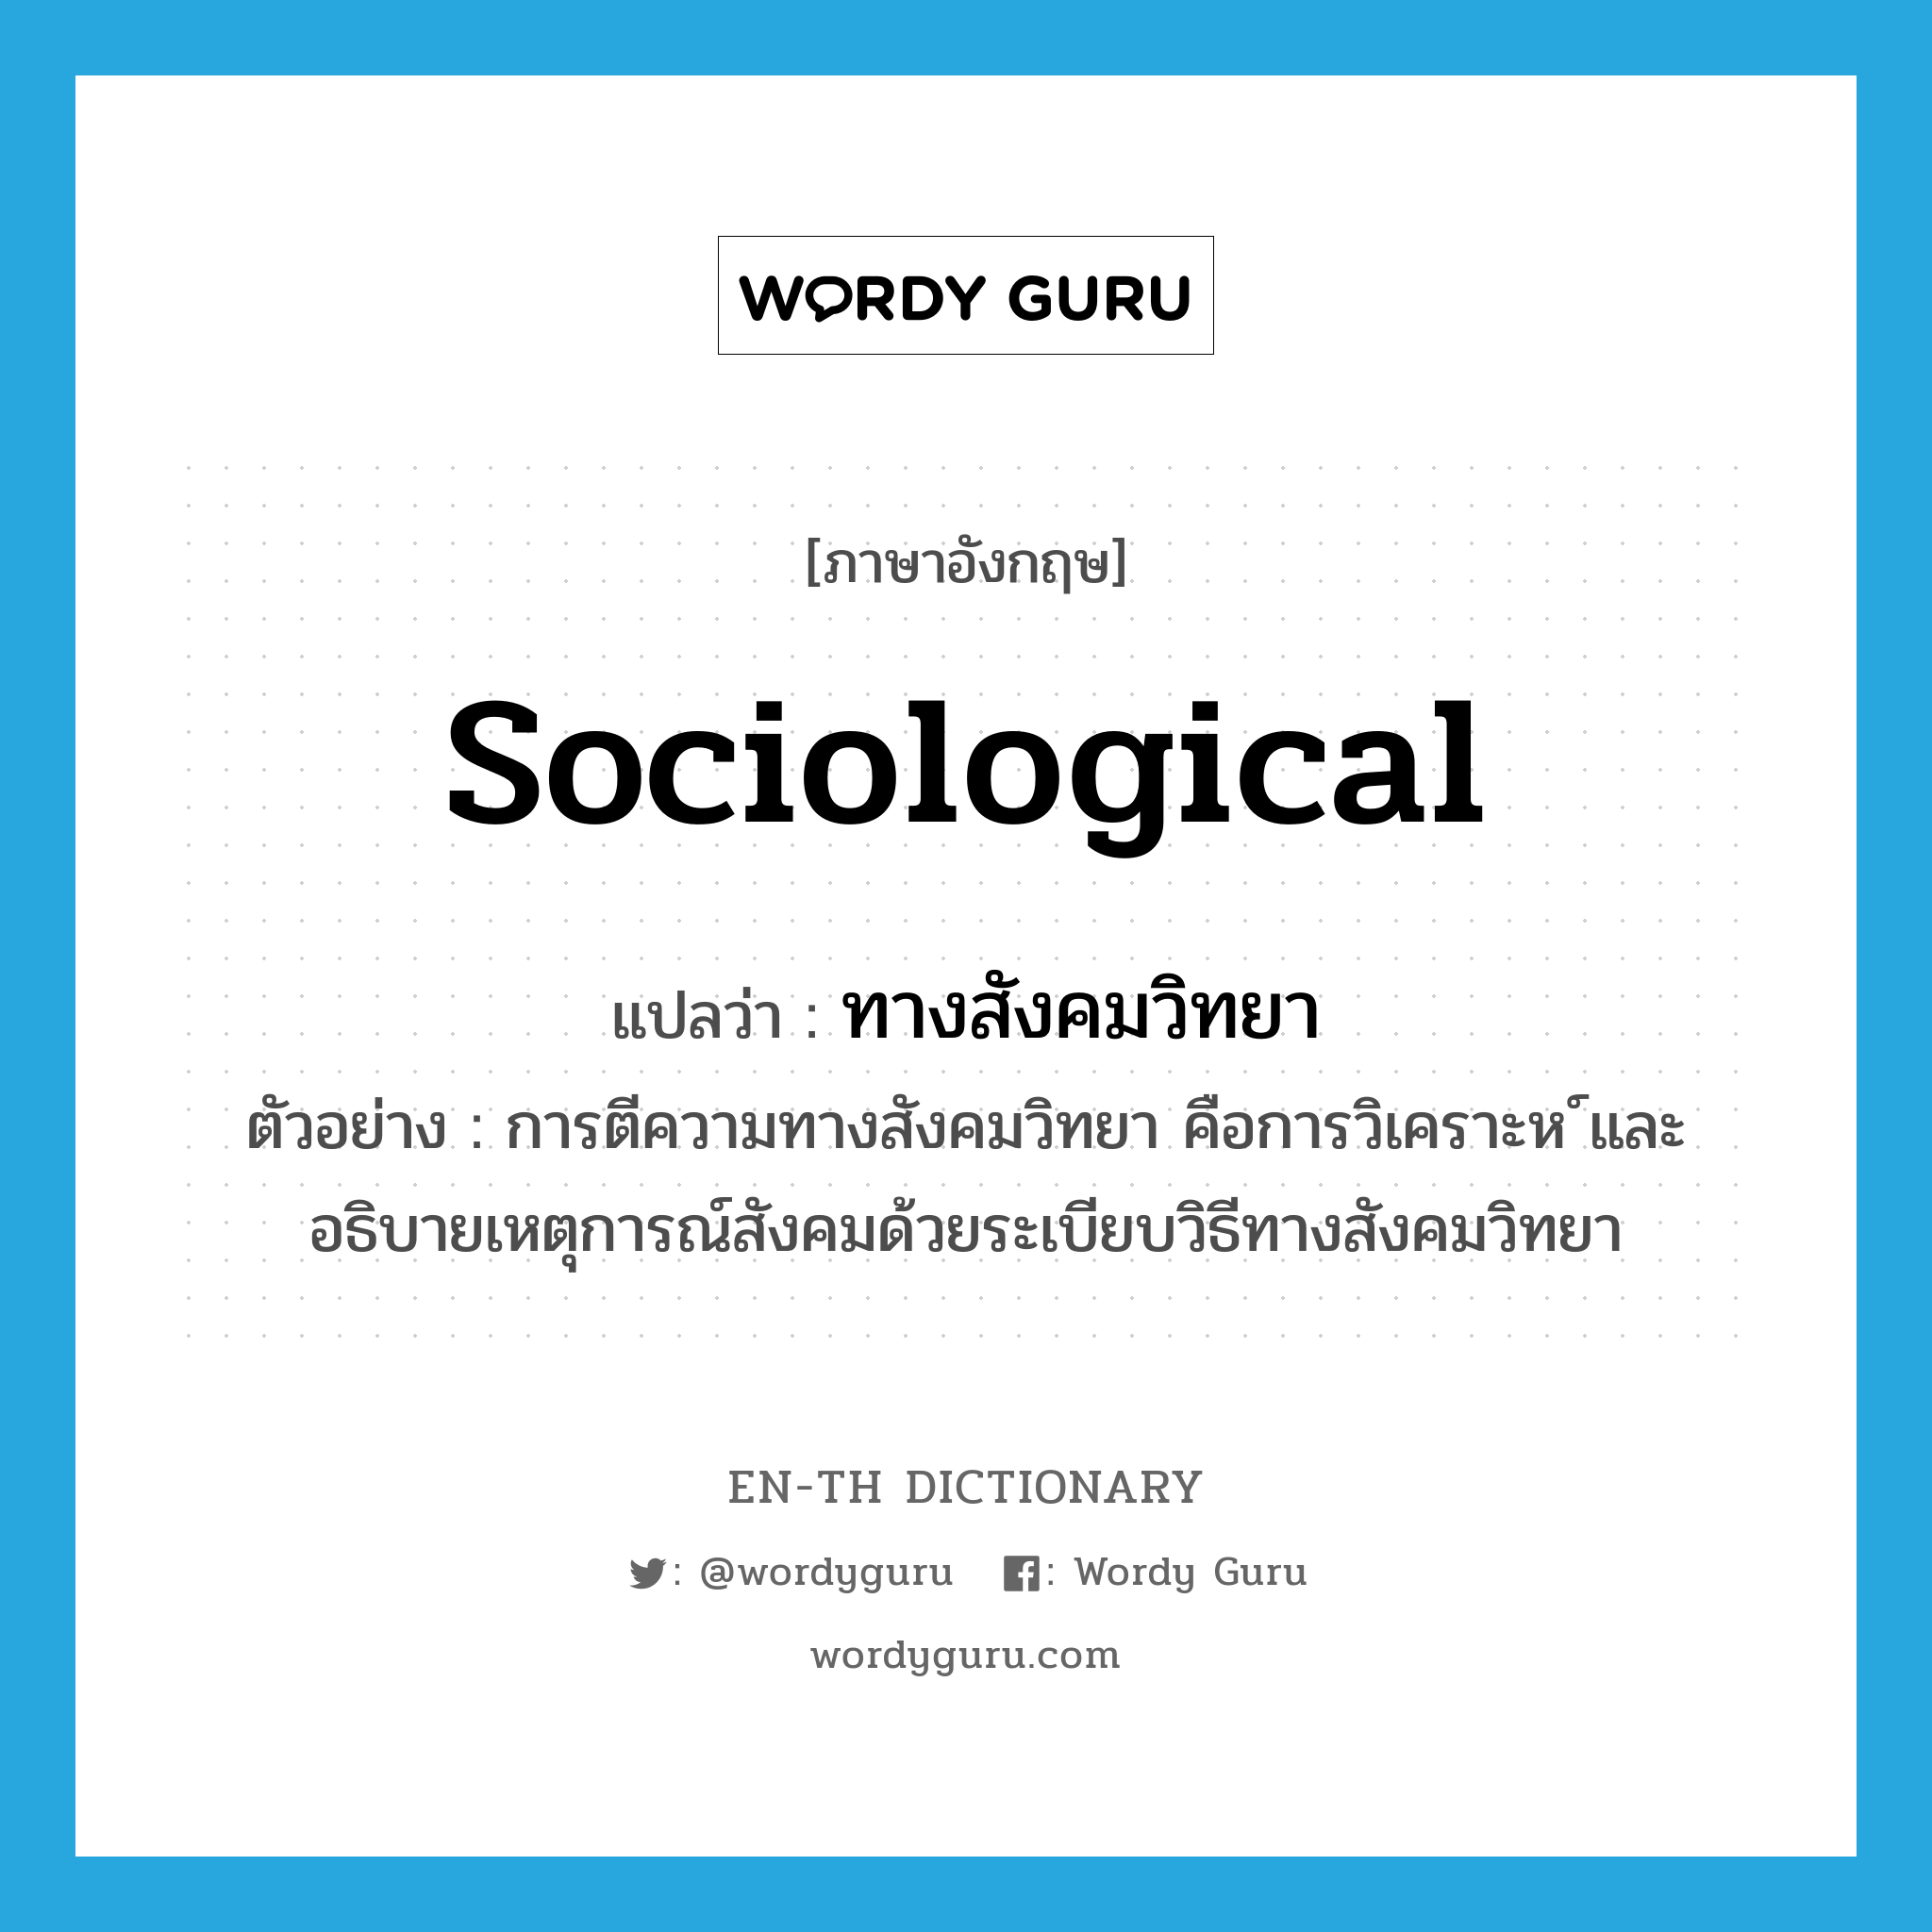 ทางสังคมวิทยา ภาษาอังกฤษ?, คำศัพท์ภาษาอังกฤษ ทางสังคมวิทยา แปลว่า sociological ประเภท ADJ ตัวอย่าง การตีความทางสังคมวิทยา คือการวิเคราะห ์และอธิบายเหตุการณ์สังคมด้วยระเบียบวิธีทางสังคมวิทยา หมวด ADJ